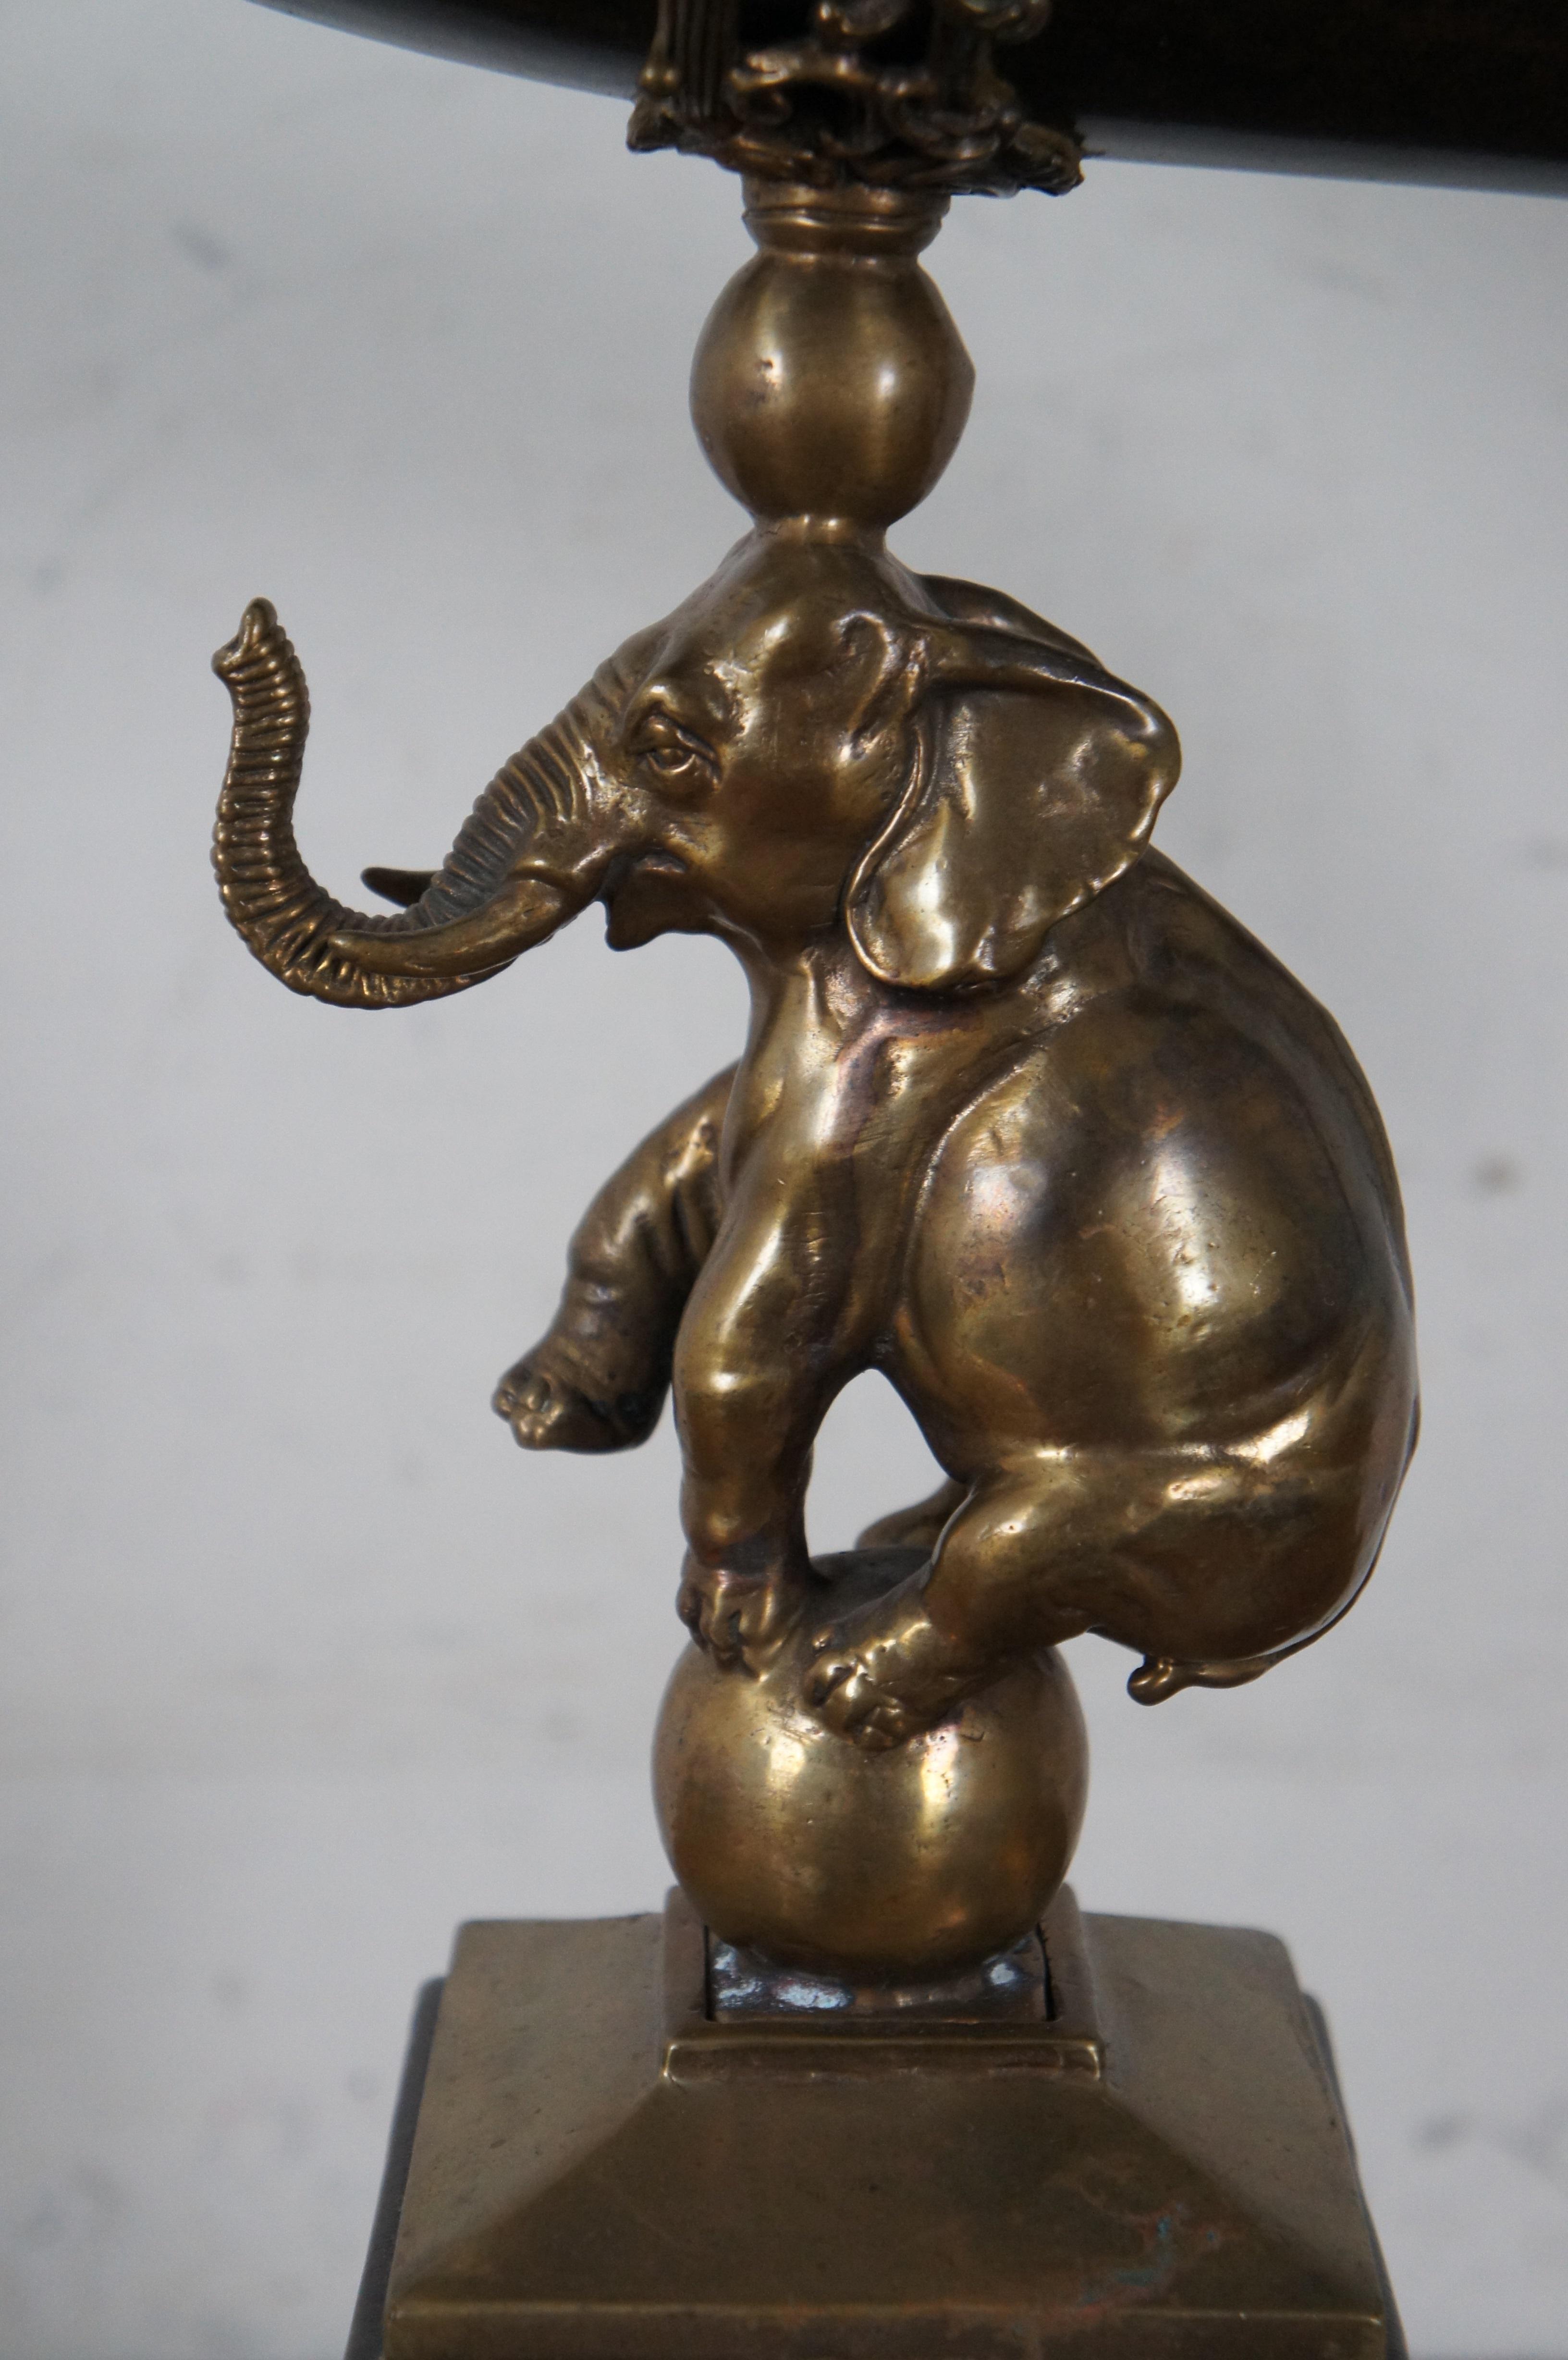 The Ornamental Porcelain & Brass Elephant Horn Drinking Hunt Vase 26